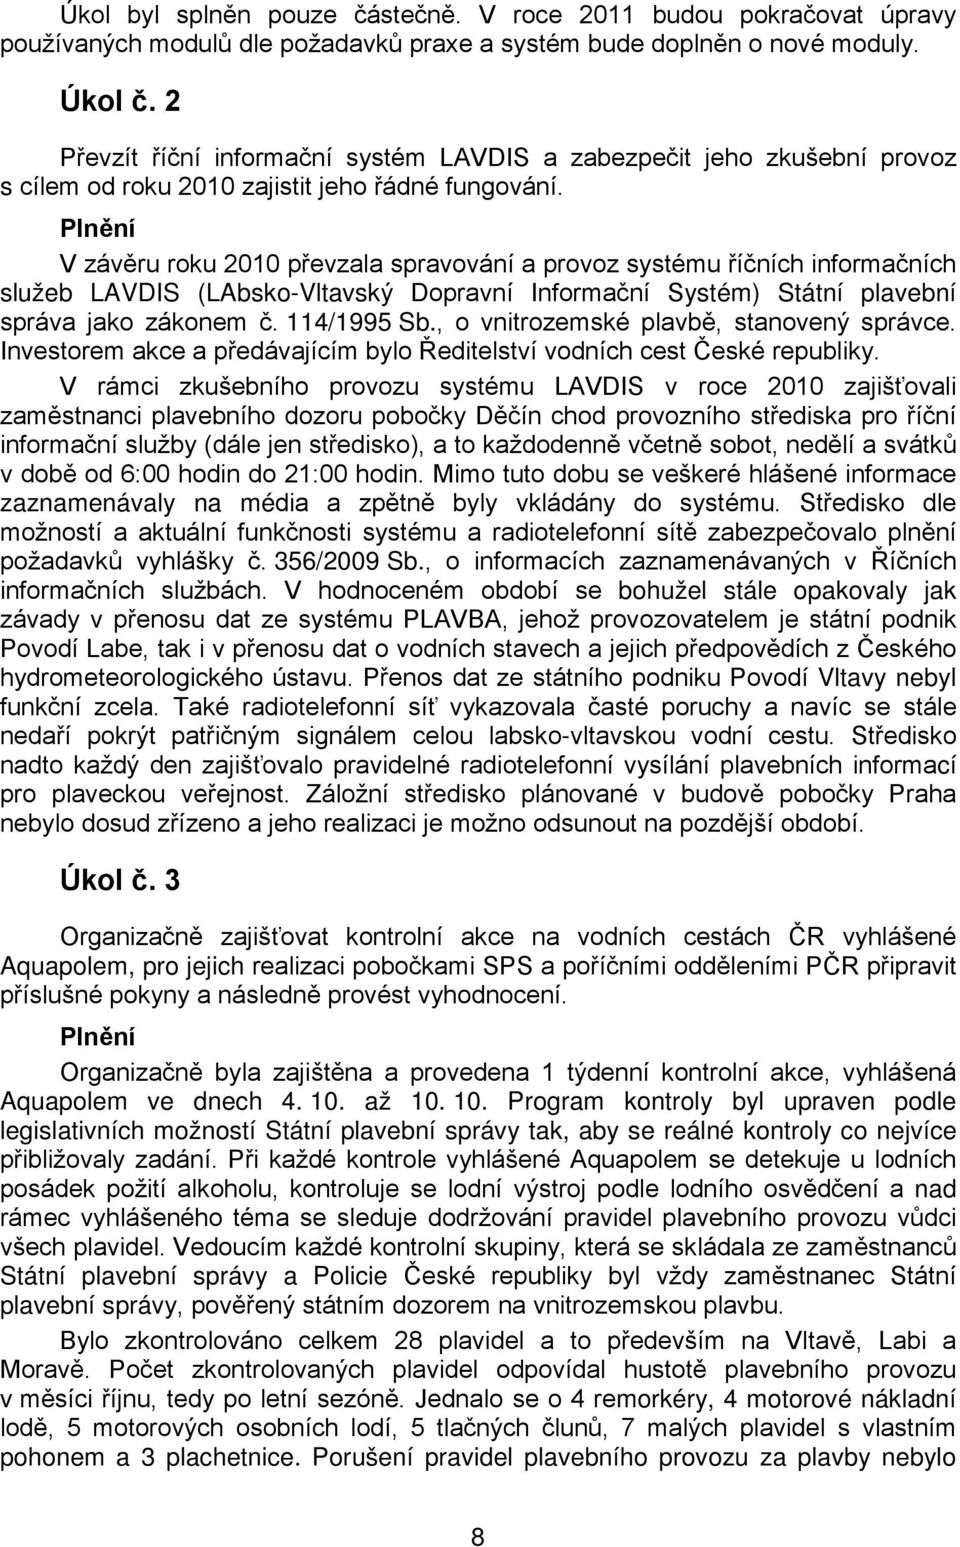 Plnění V závěru roku 2010 převzala spravování a provoz systému říčních informačních služeb LAVDIS (LAbsko-Vltavský Dopravní Informační Systém) Státní plavební správa jako zákonem č. 114/1995 Sb.